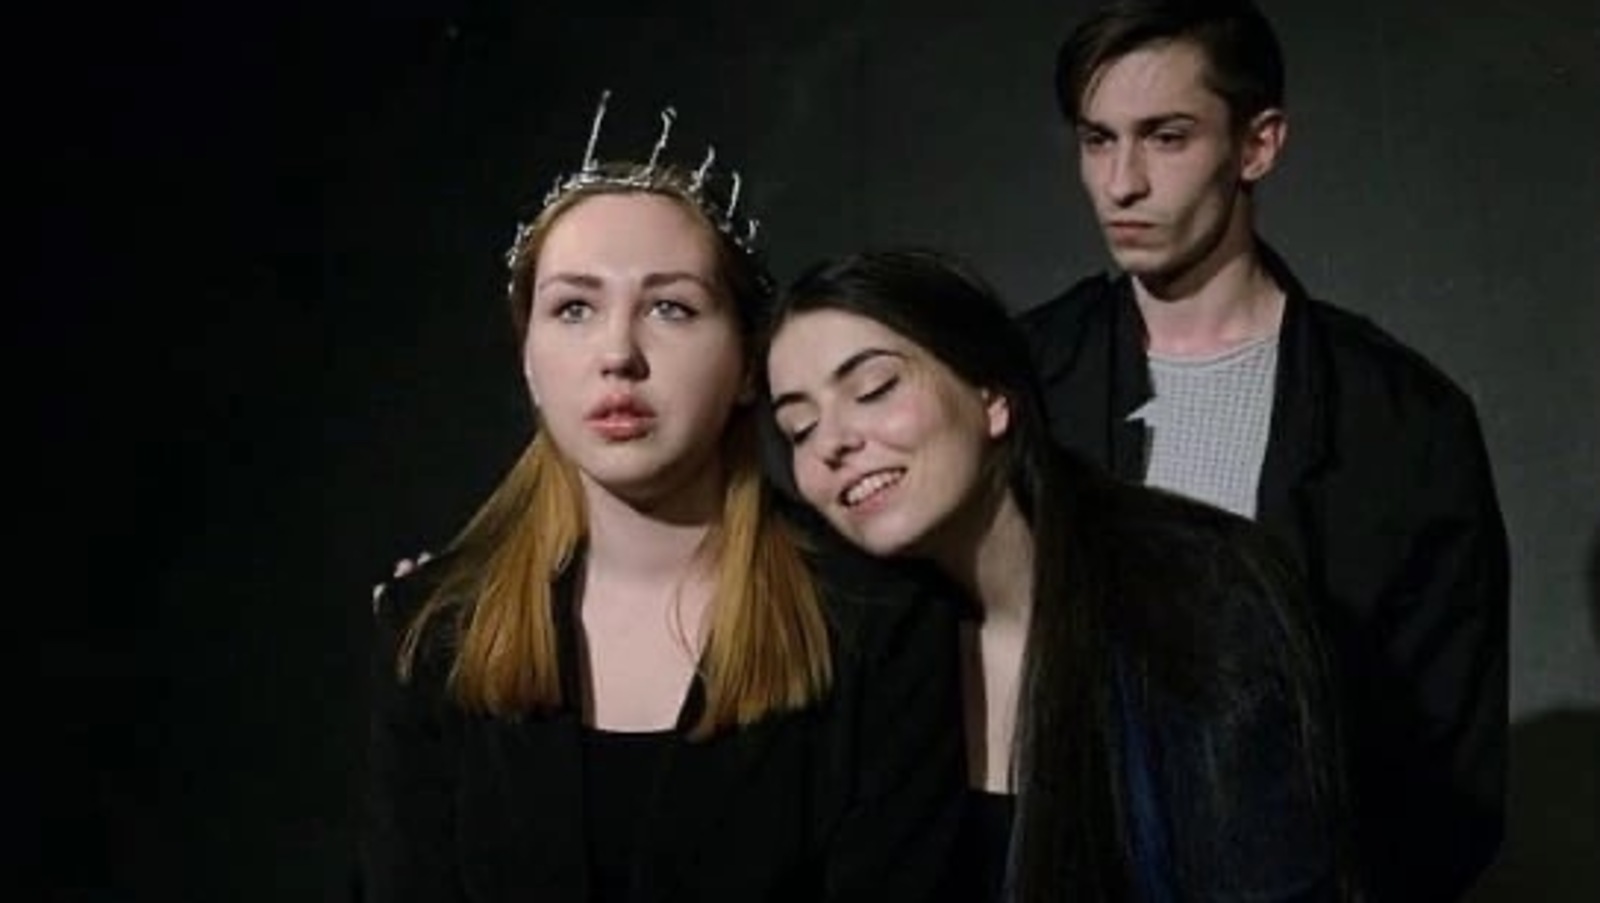 Классика семейного предательства - это драма Вильяма Шекспира «Король Лир», где его подло предают старшие дочери Регана и Гонерилья.